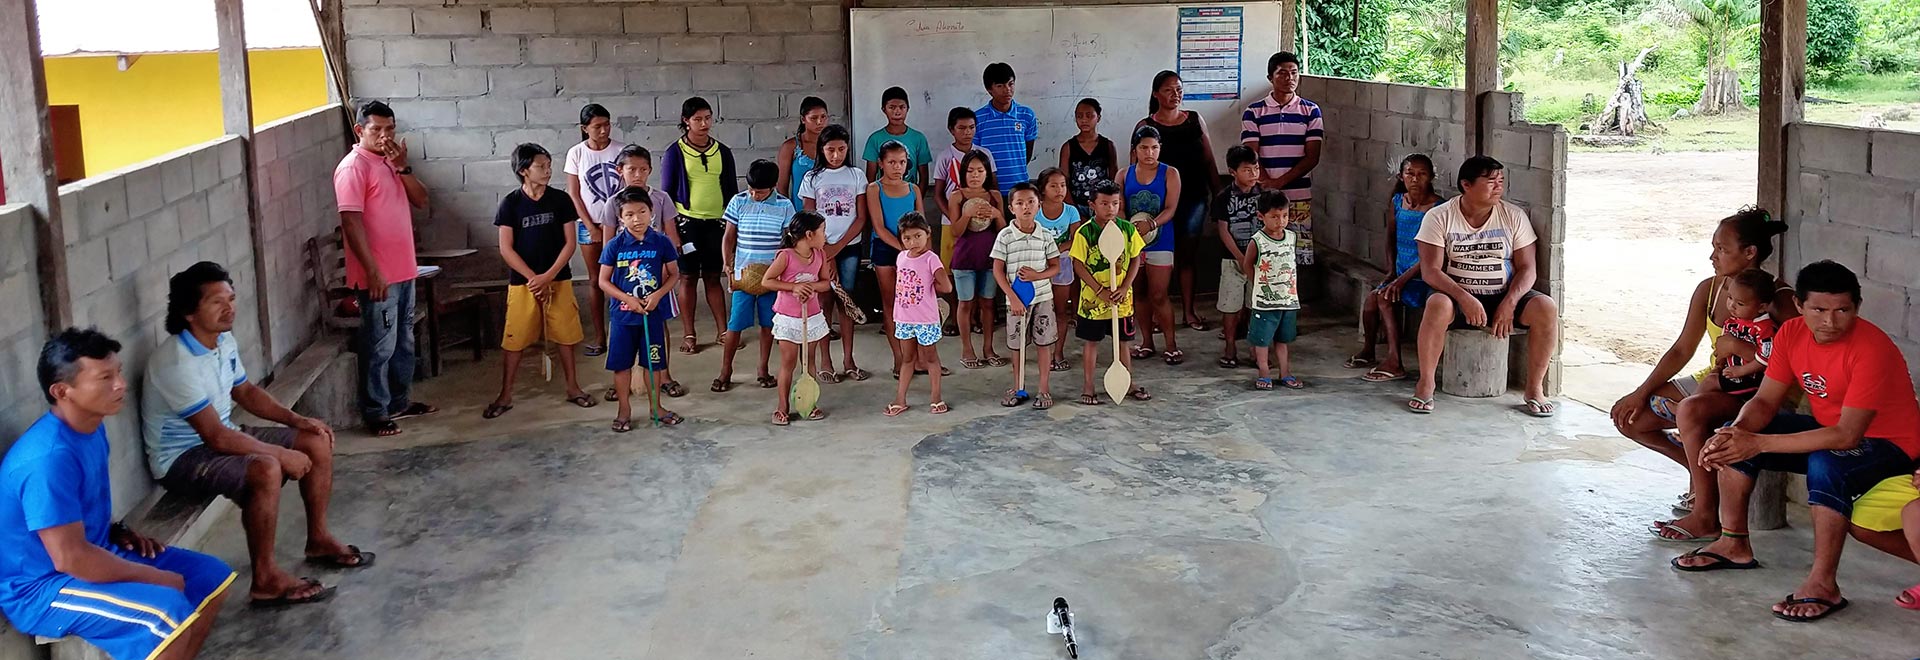 Comunidade indígena na ilha de Tawa, na região de São Gabriel da Cachoeira, a 850 quilômetros de Manaus